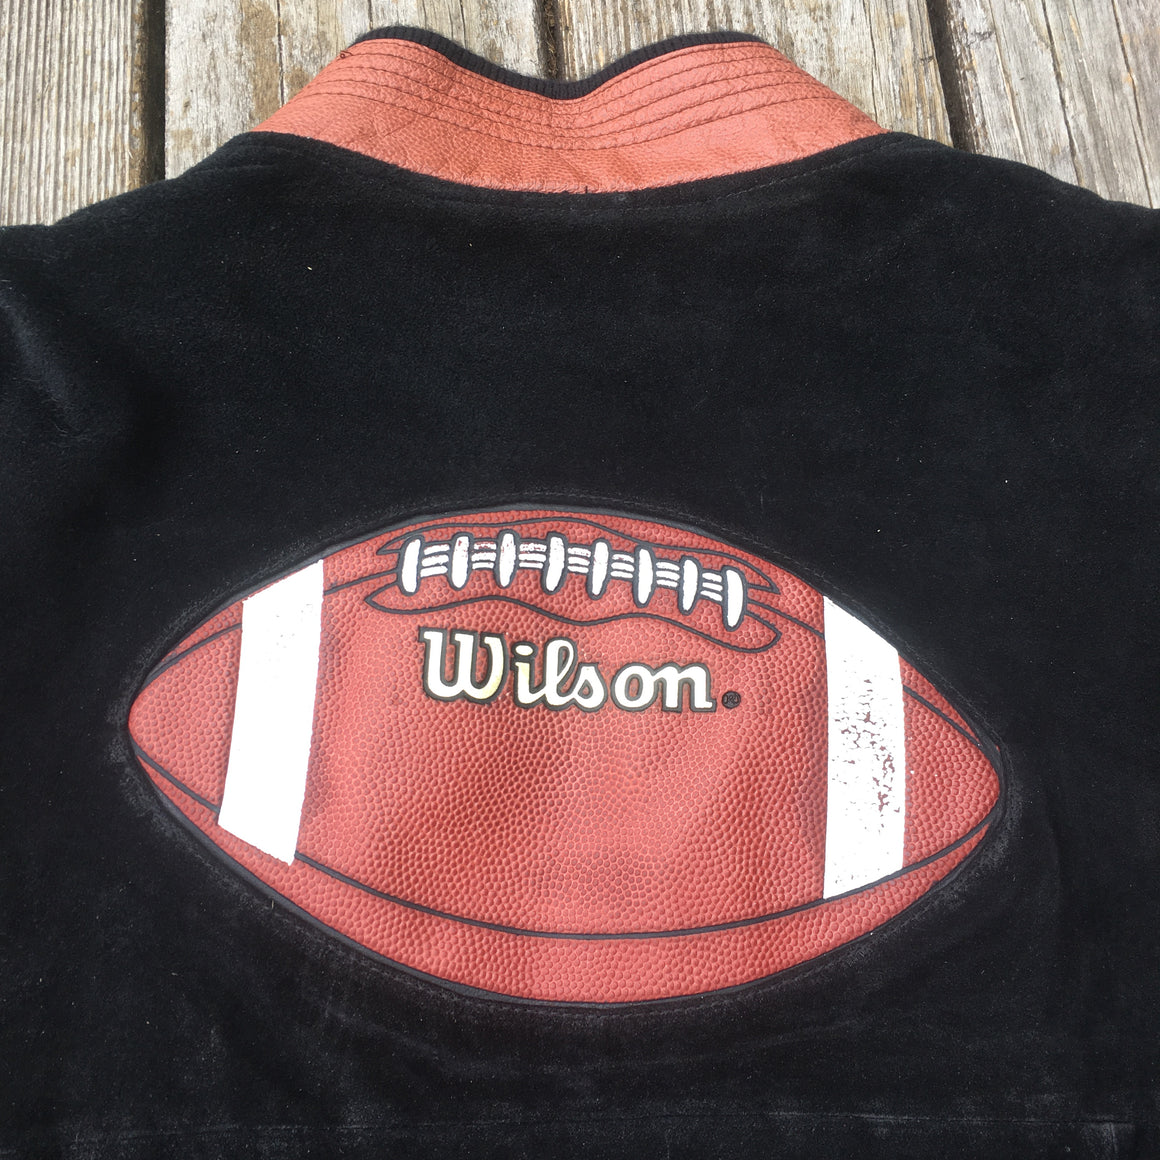 Wilson football jacket - XL